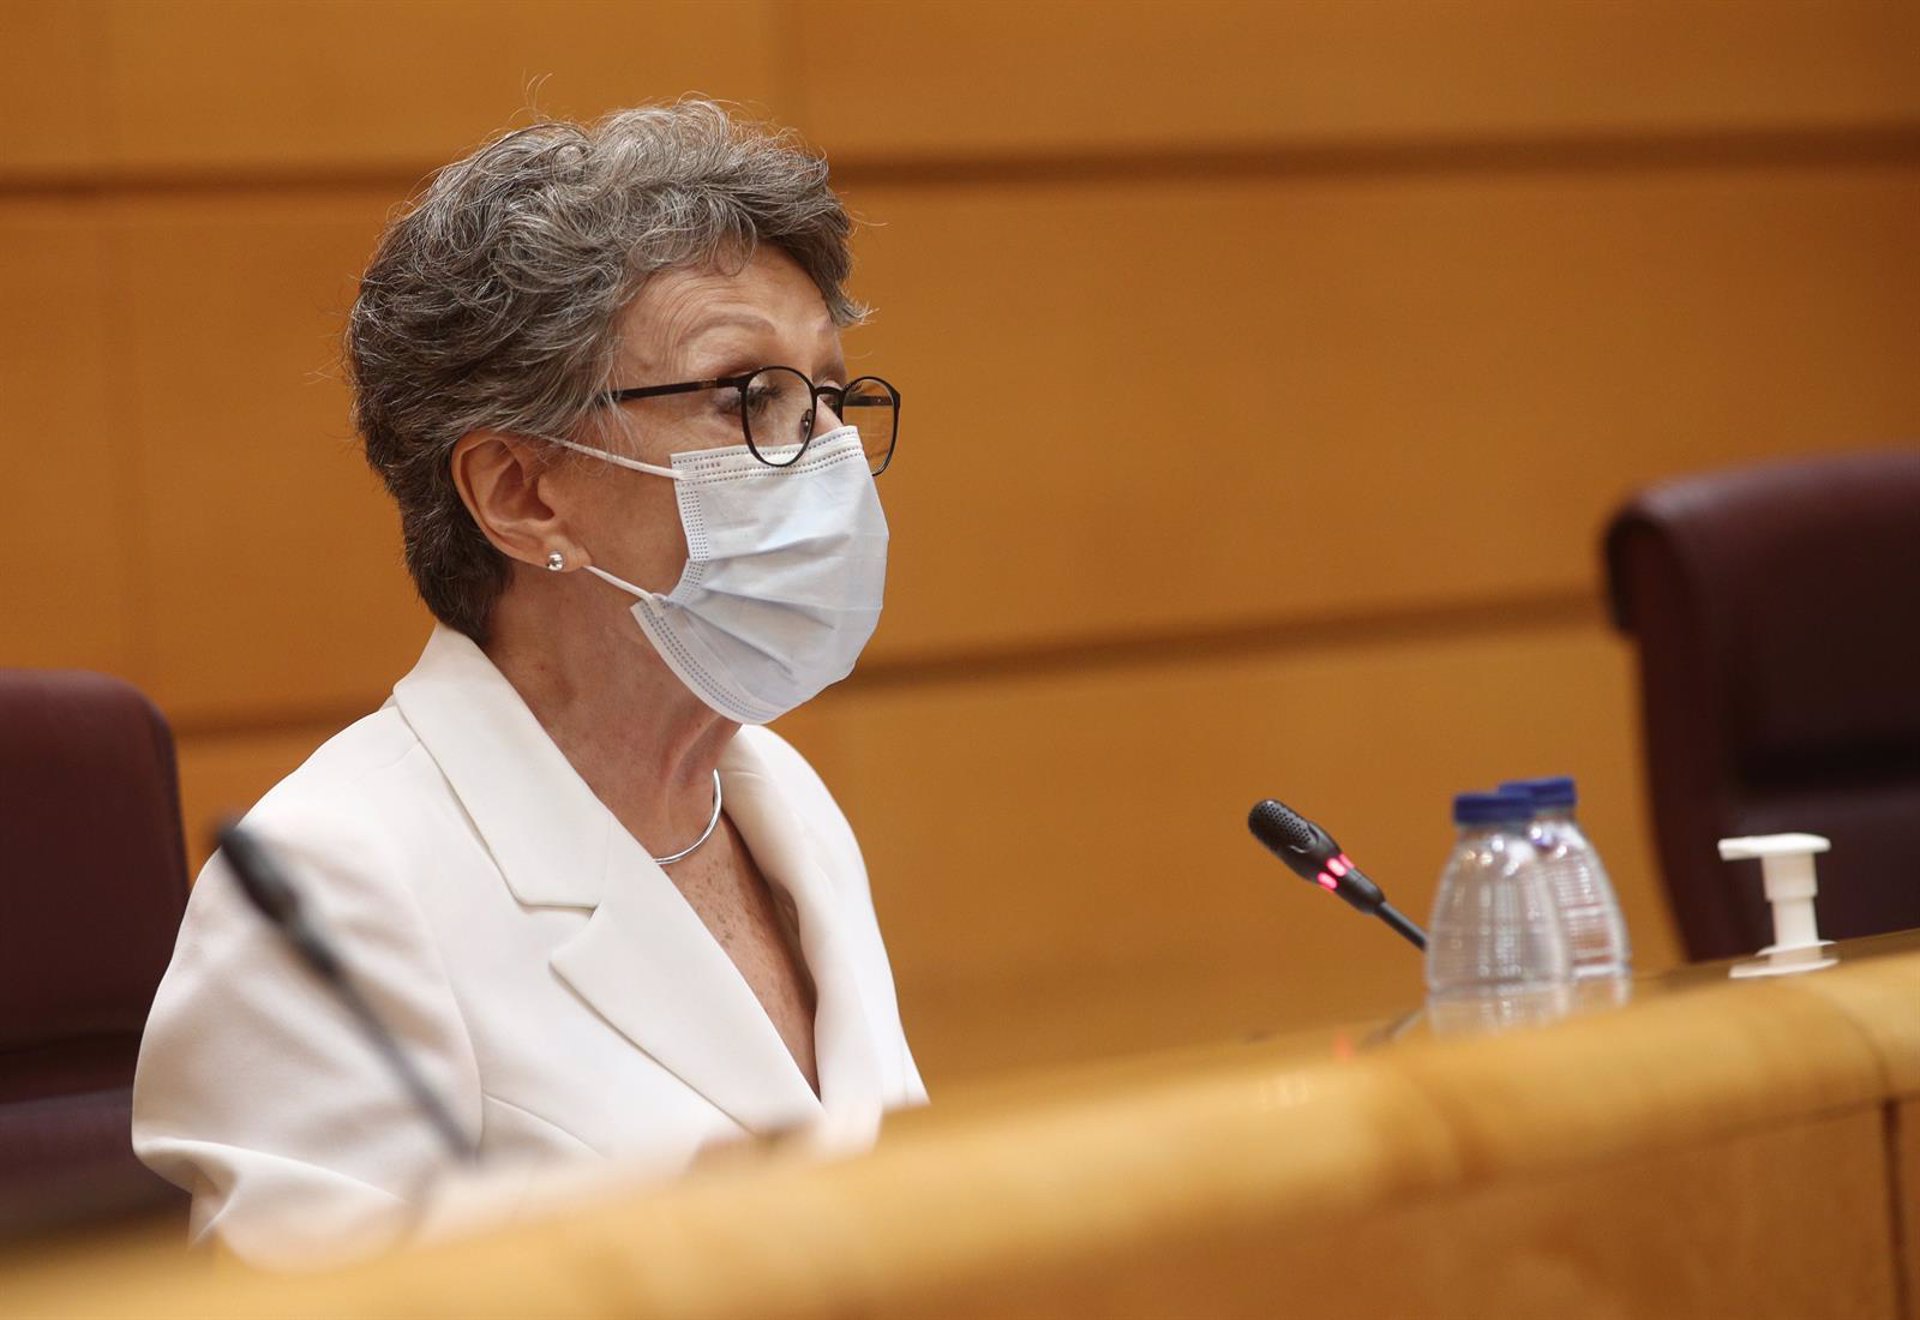 El TC declara inconstitucional el nombramiento de Rosa María Mateo en RTVE